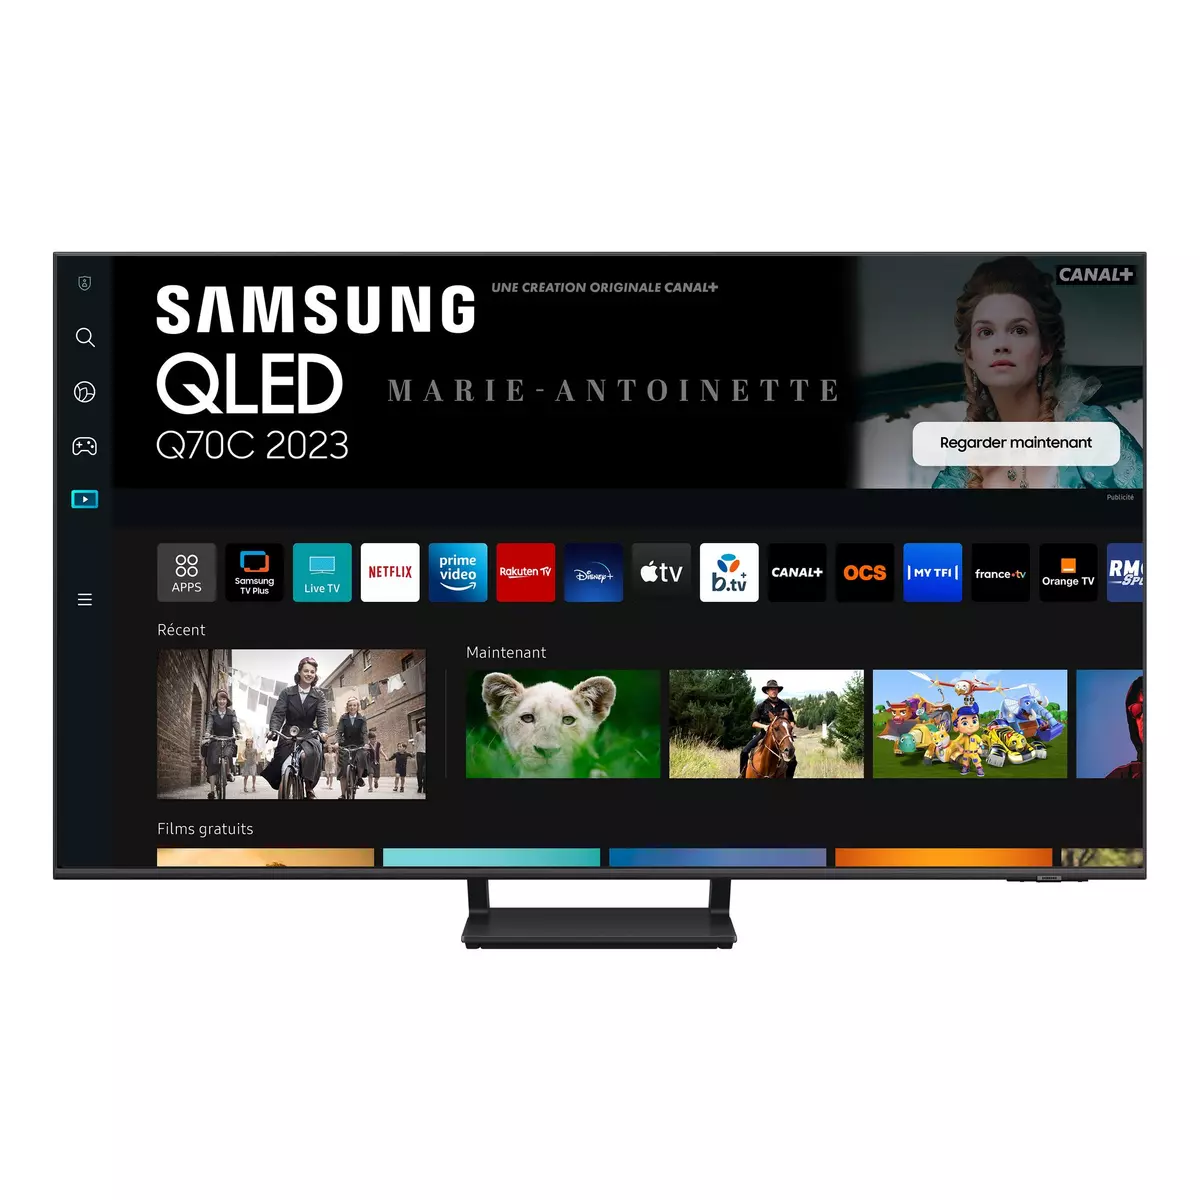 SAMSUNG TQ75Q70CATXXC 2023 TV QLED 4K Ultra HD 189 cm Smart TV